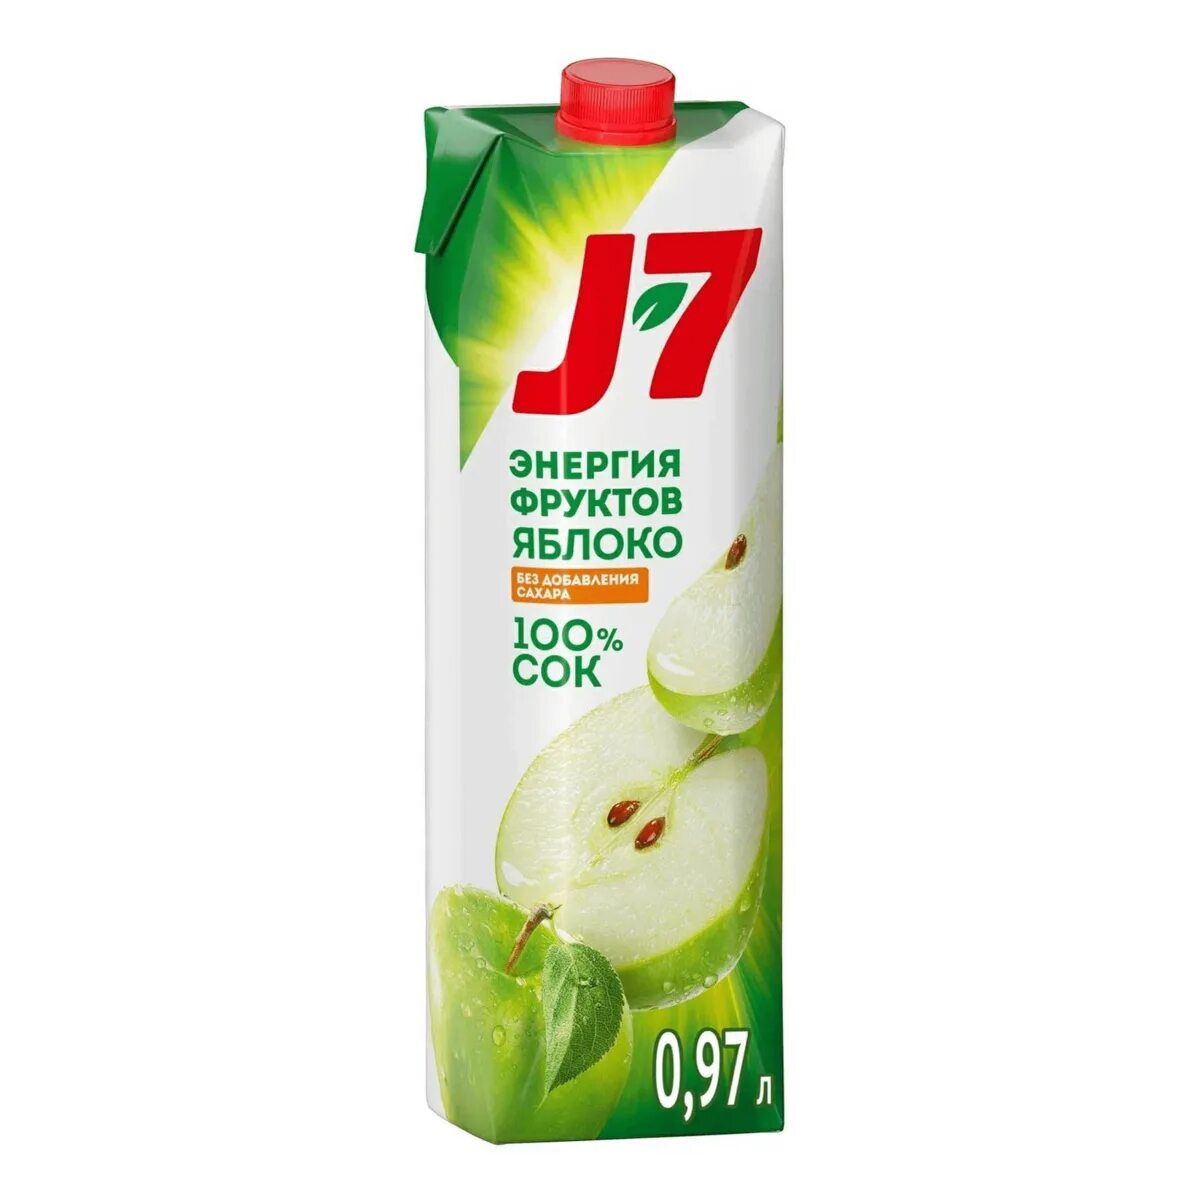 Яблоко 7 0 7 2. Сок яблочный j7, 970 мл. Сок j7 яблоко зеленое 0,97л. J7 сок j7 яблоко 100%, 970мл. J7 сок яблочный 0,97л.